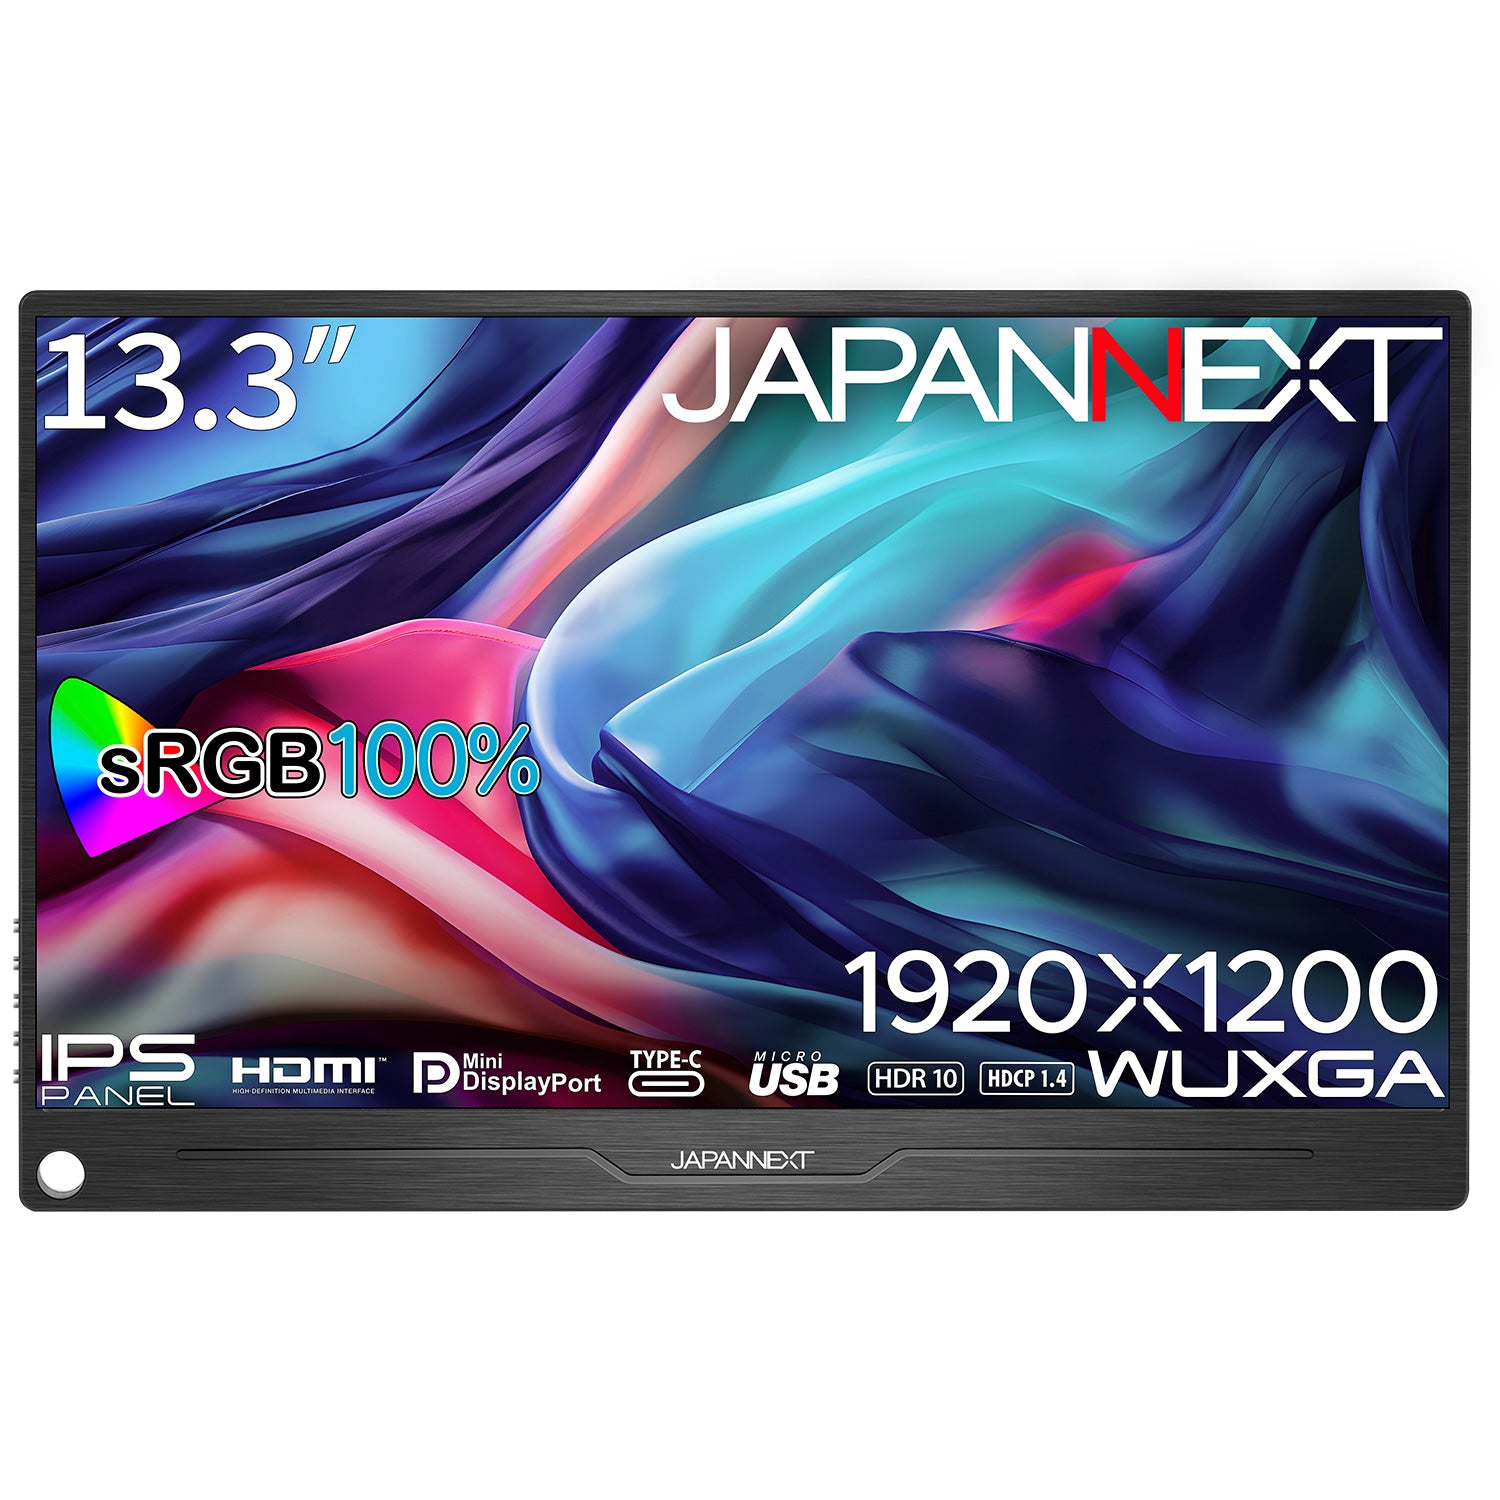 JAPANNEXT 13.3インチ IPSパネル搭載 WUXGA(1920x1200)解像度 モバイル 